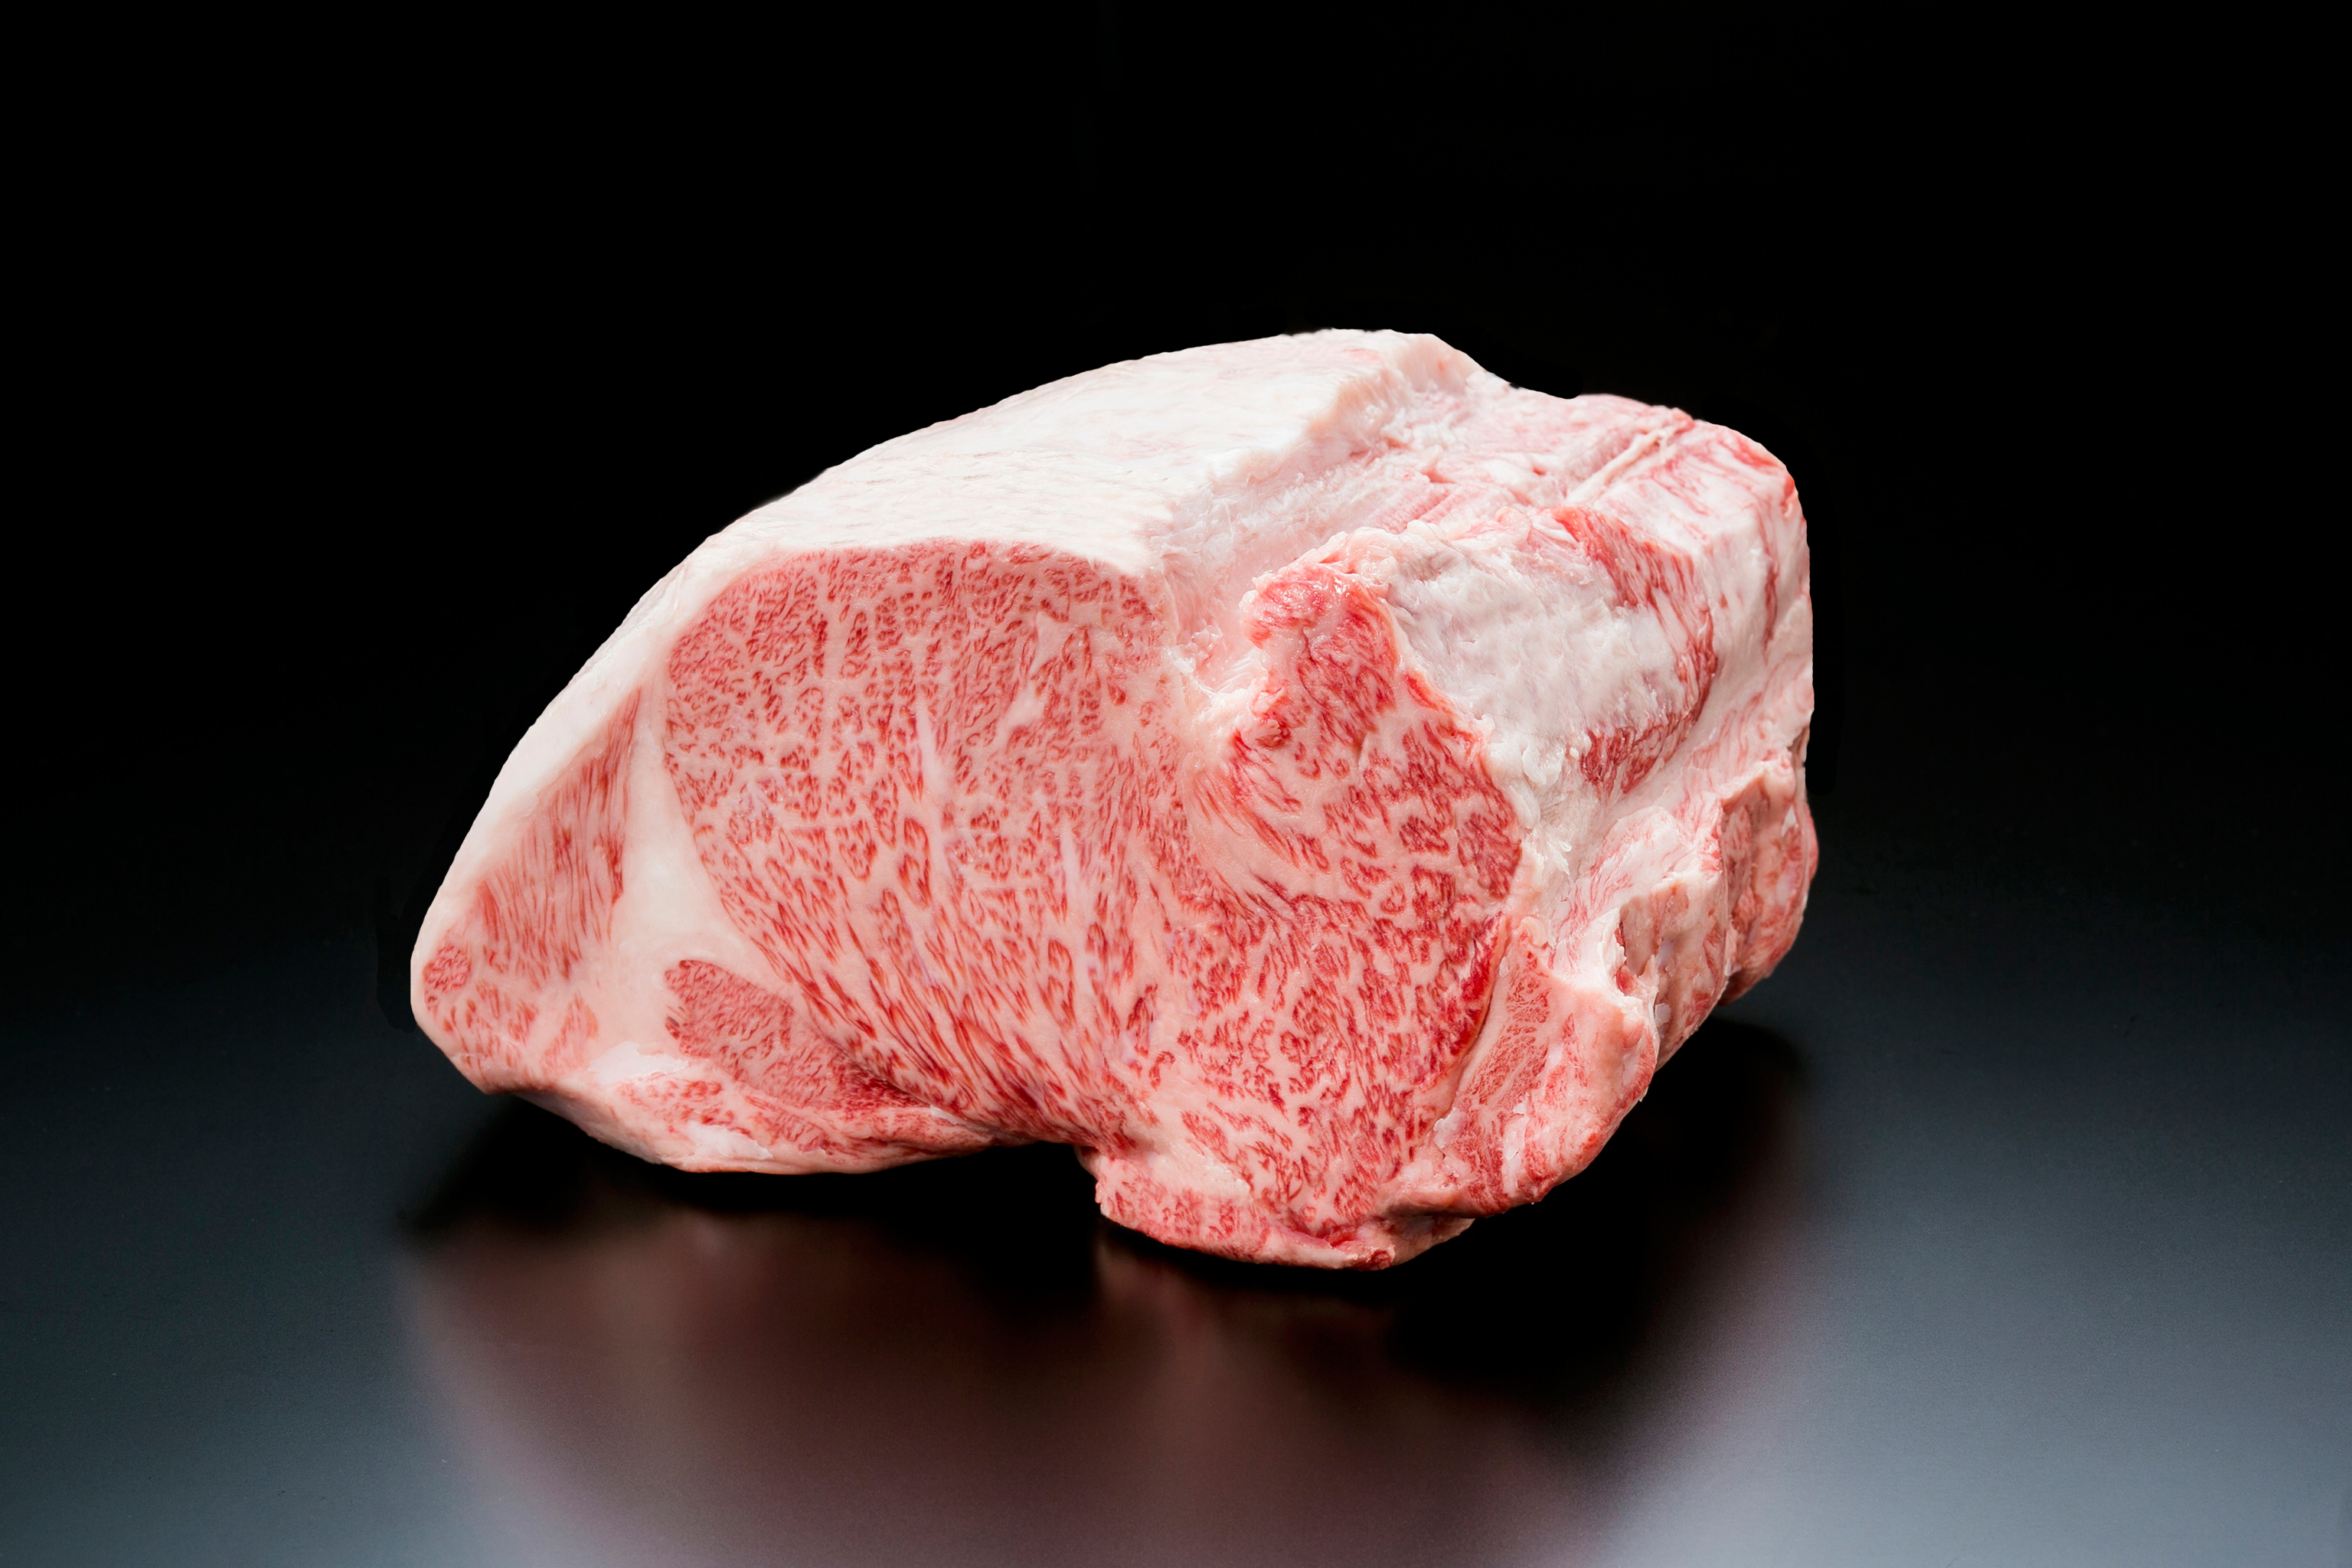 La carne Matsusaka Beef presenta gran infiltración de grasa.